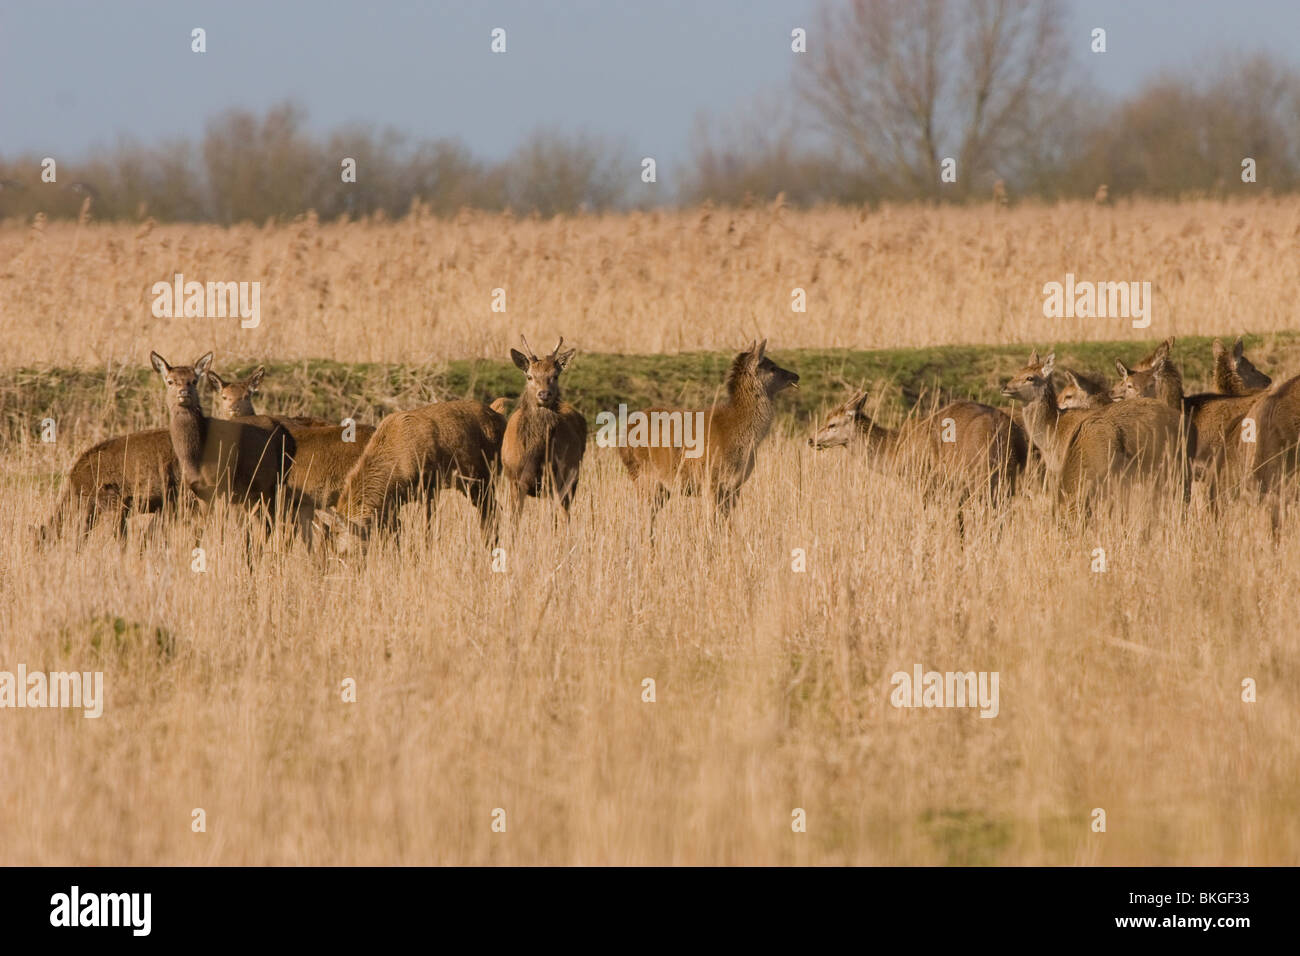 Roedel edelherten (Cervus elaphus) in de winter met bastgewei, Herd of red deer in winter Stock Photo